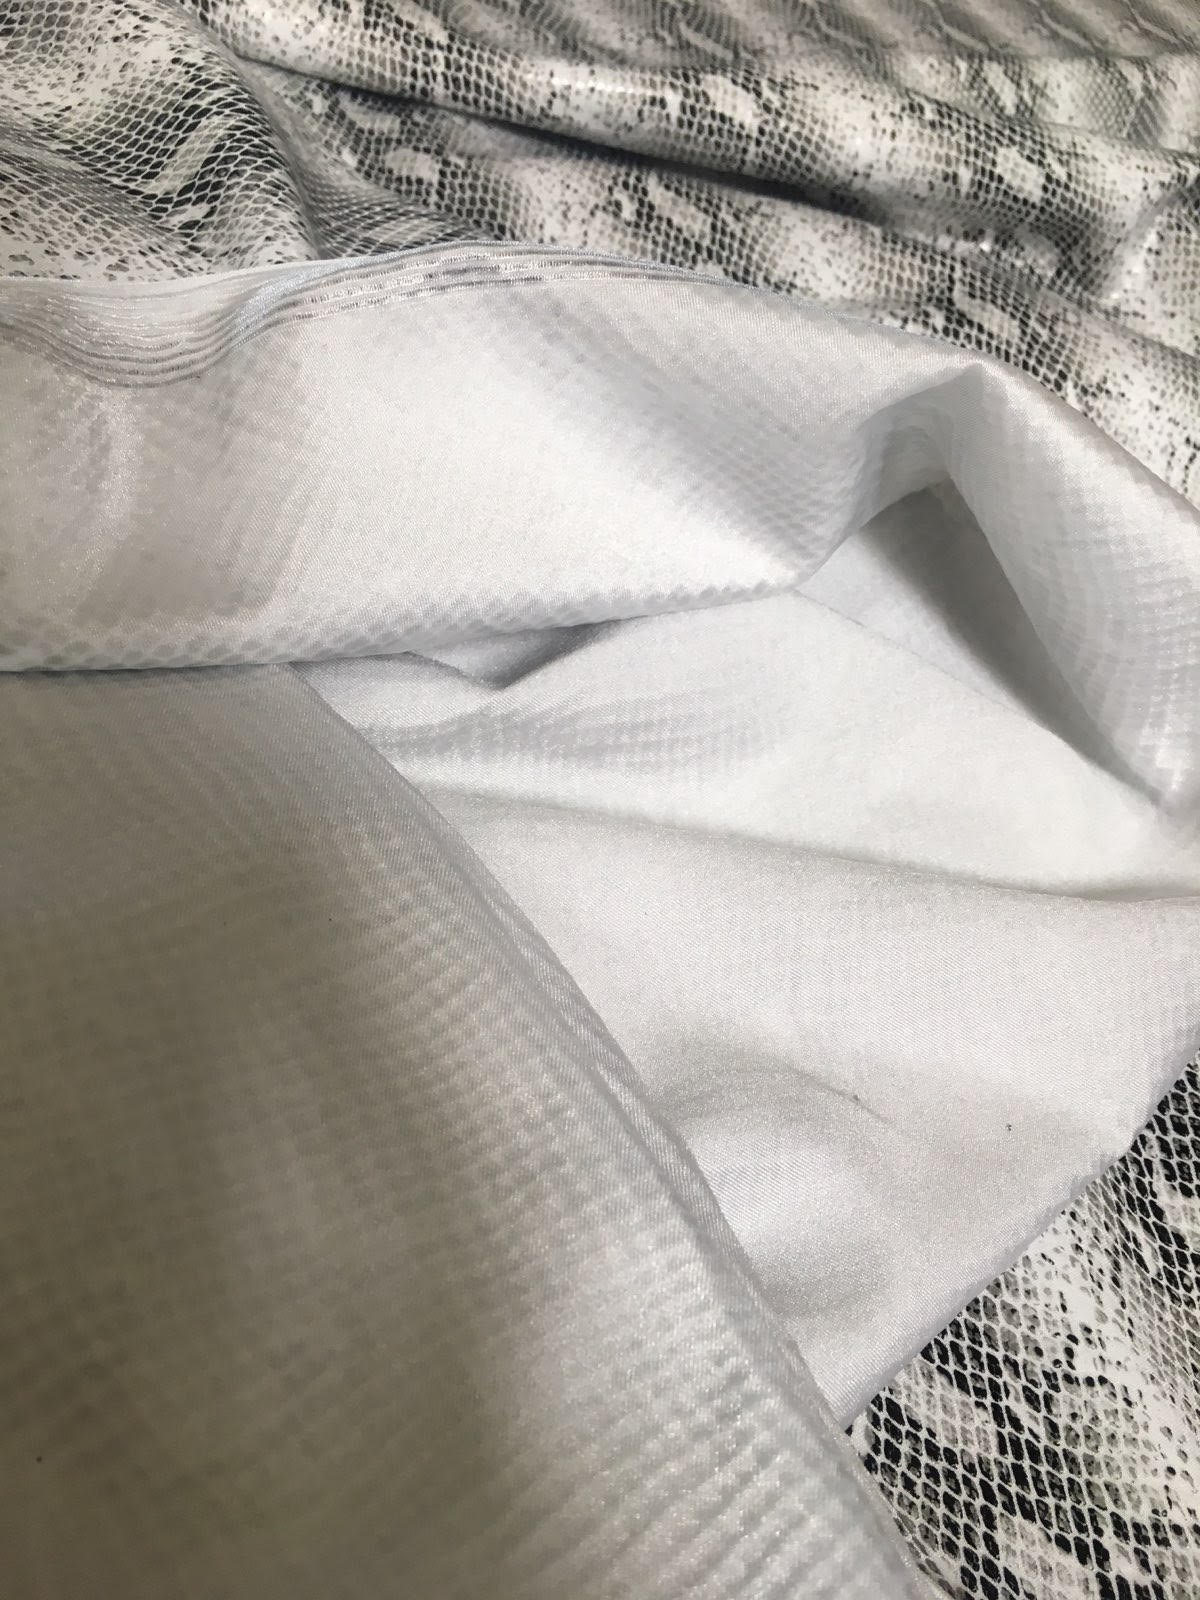 BLACK WHITE Venom snake skin spandex 4 way stretch fabric | Etsy